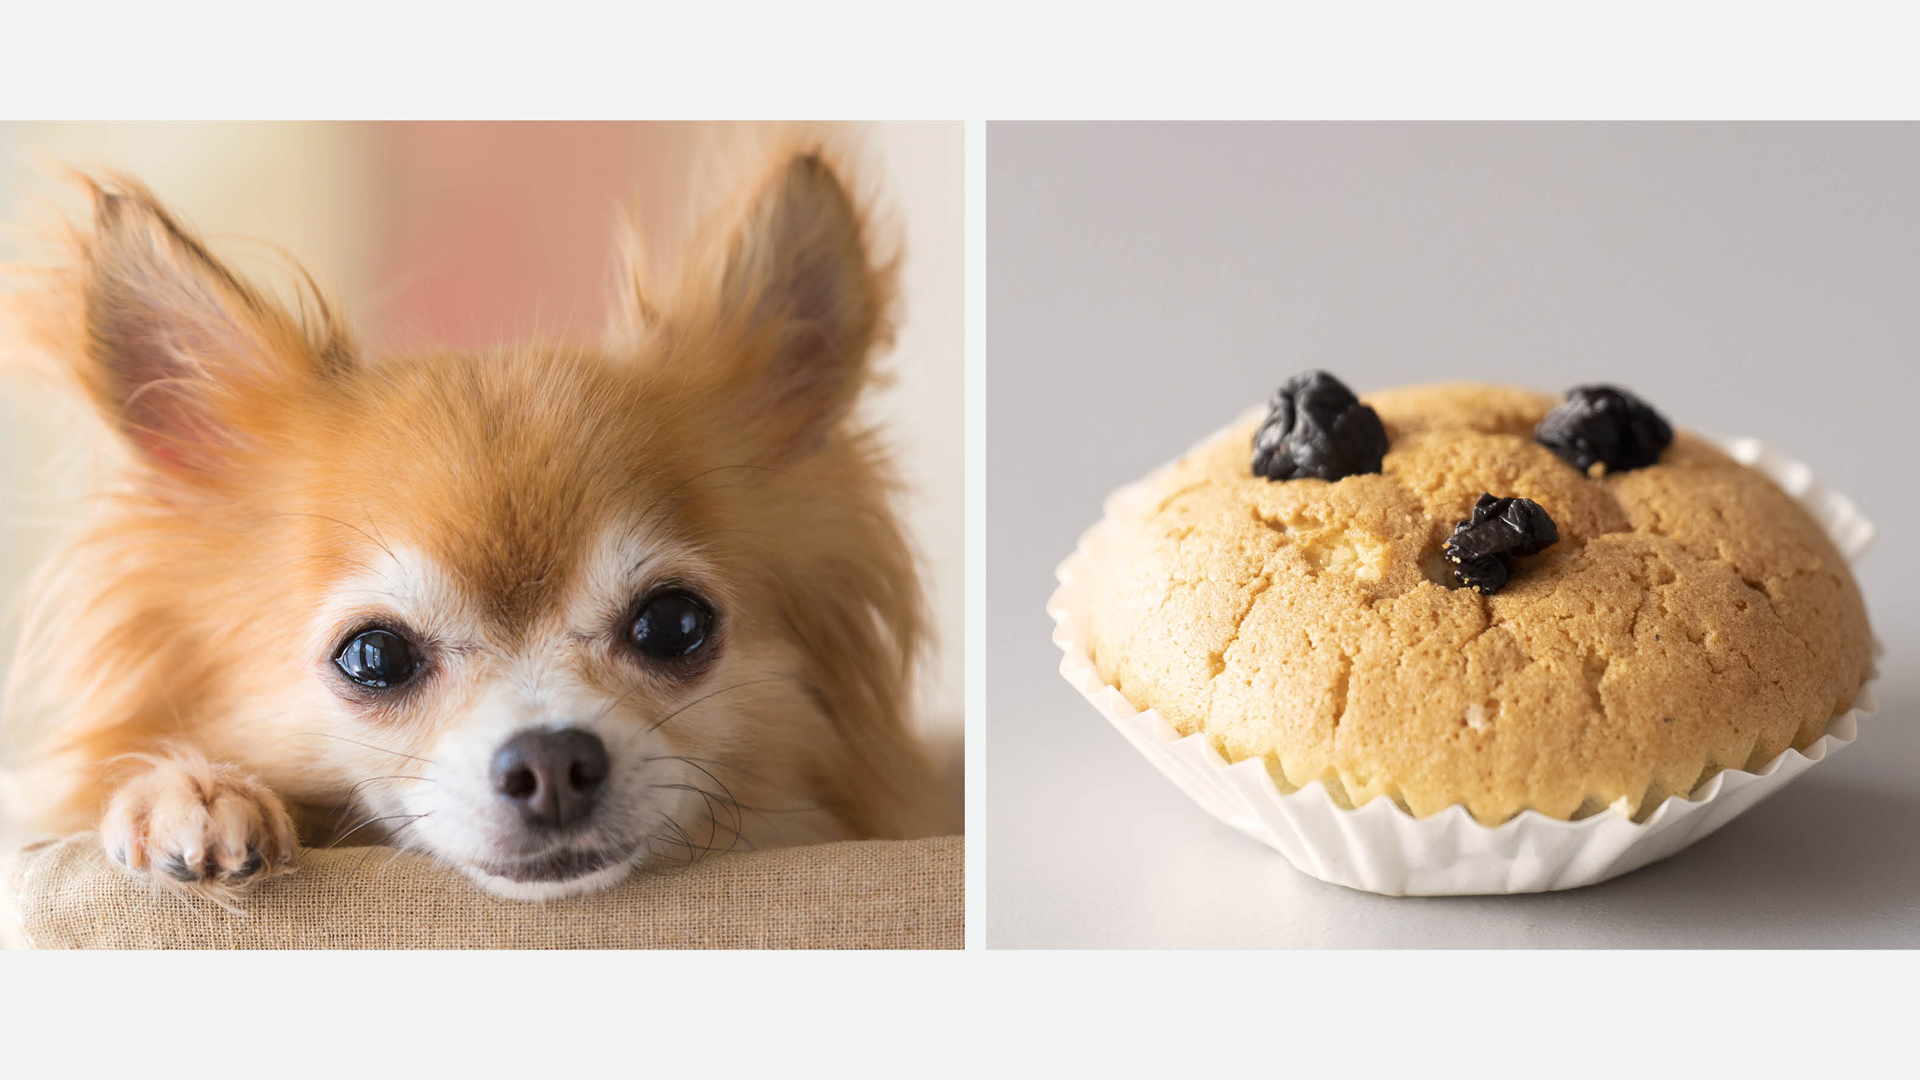 Hund und Muffin – wie ähnlich sehen sie sich?